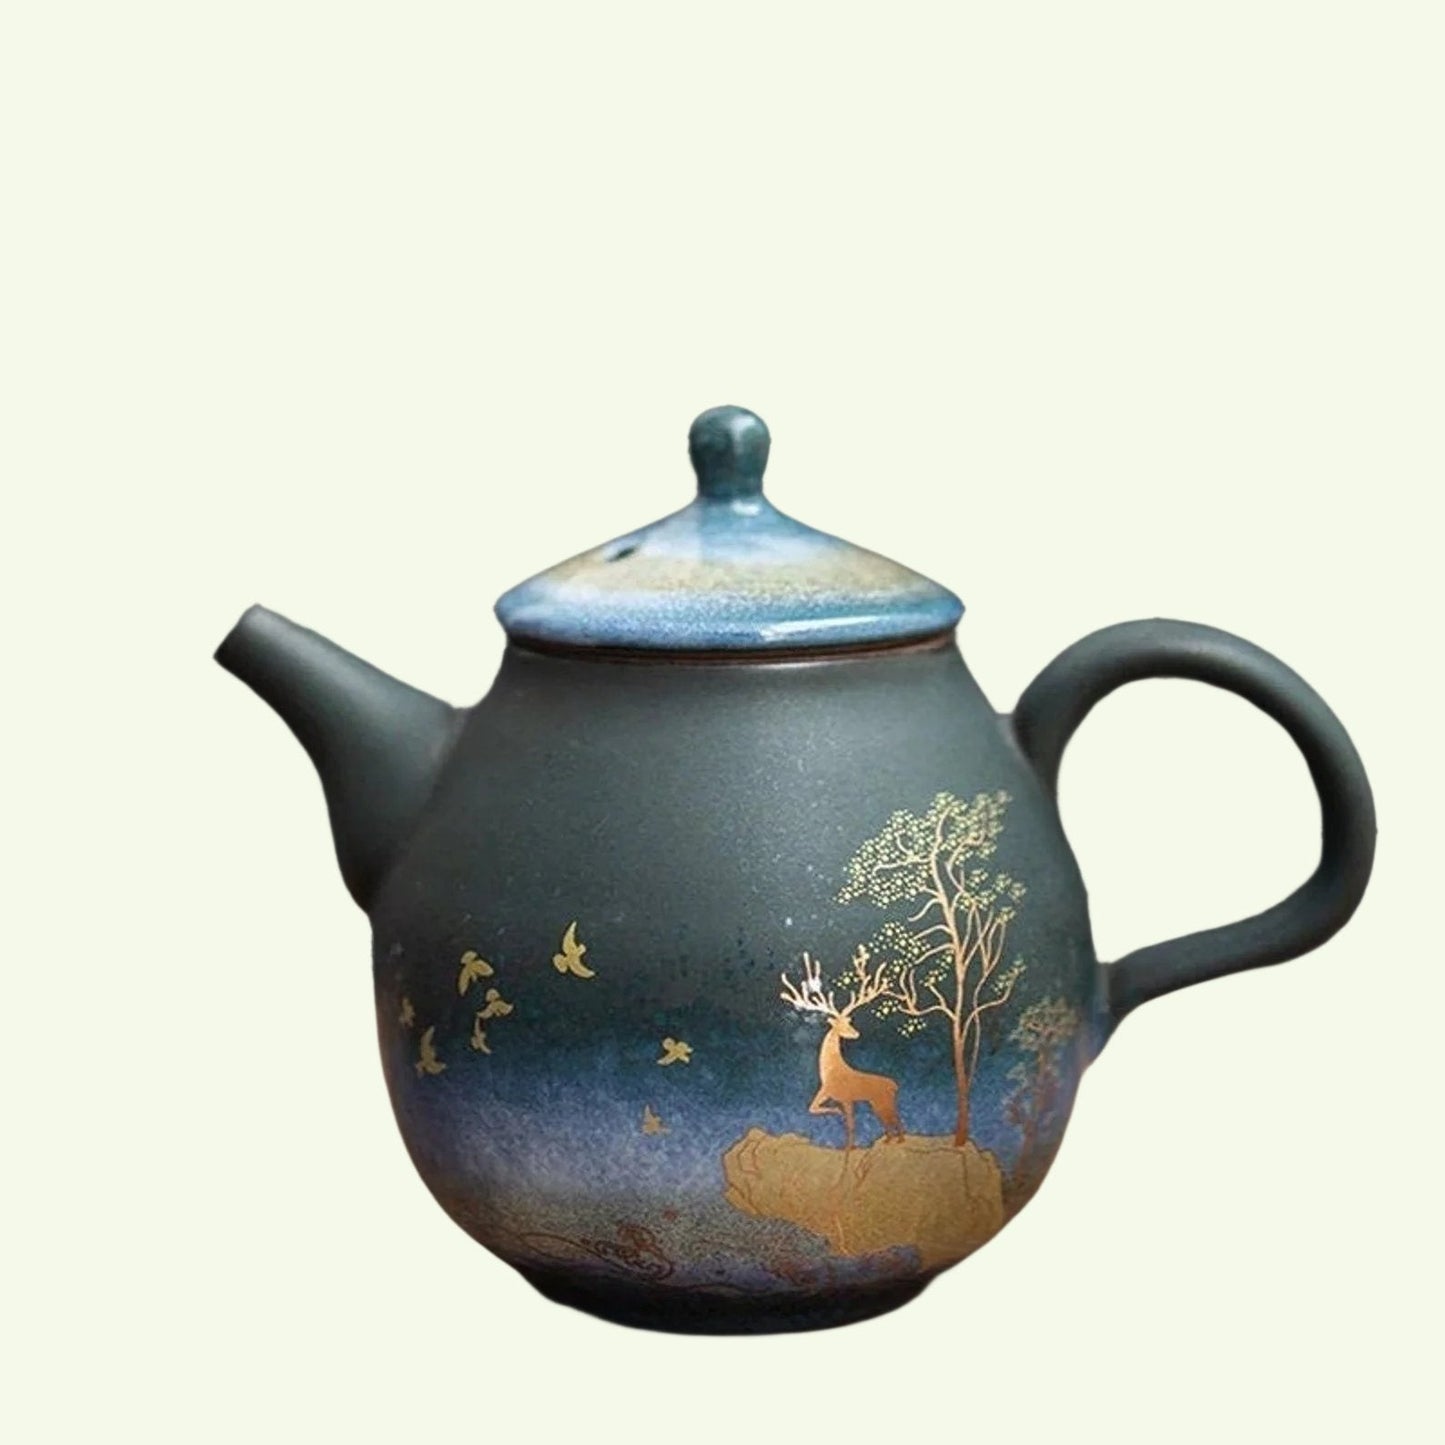 إبريق شاي من السيراميك وعاء شاي صيني غزال ذهبي إبريق شاي من السيراميك - وعاء واحد طقم شاي الكونغ فو المنزلي